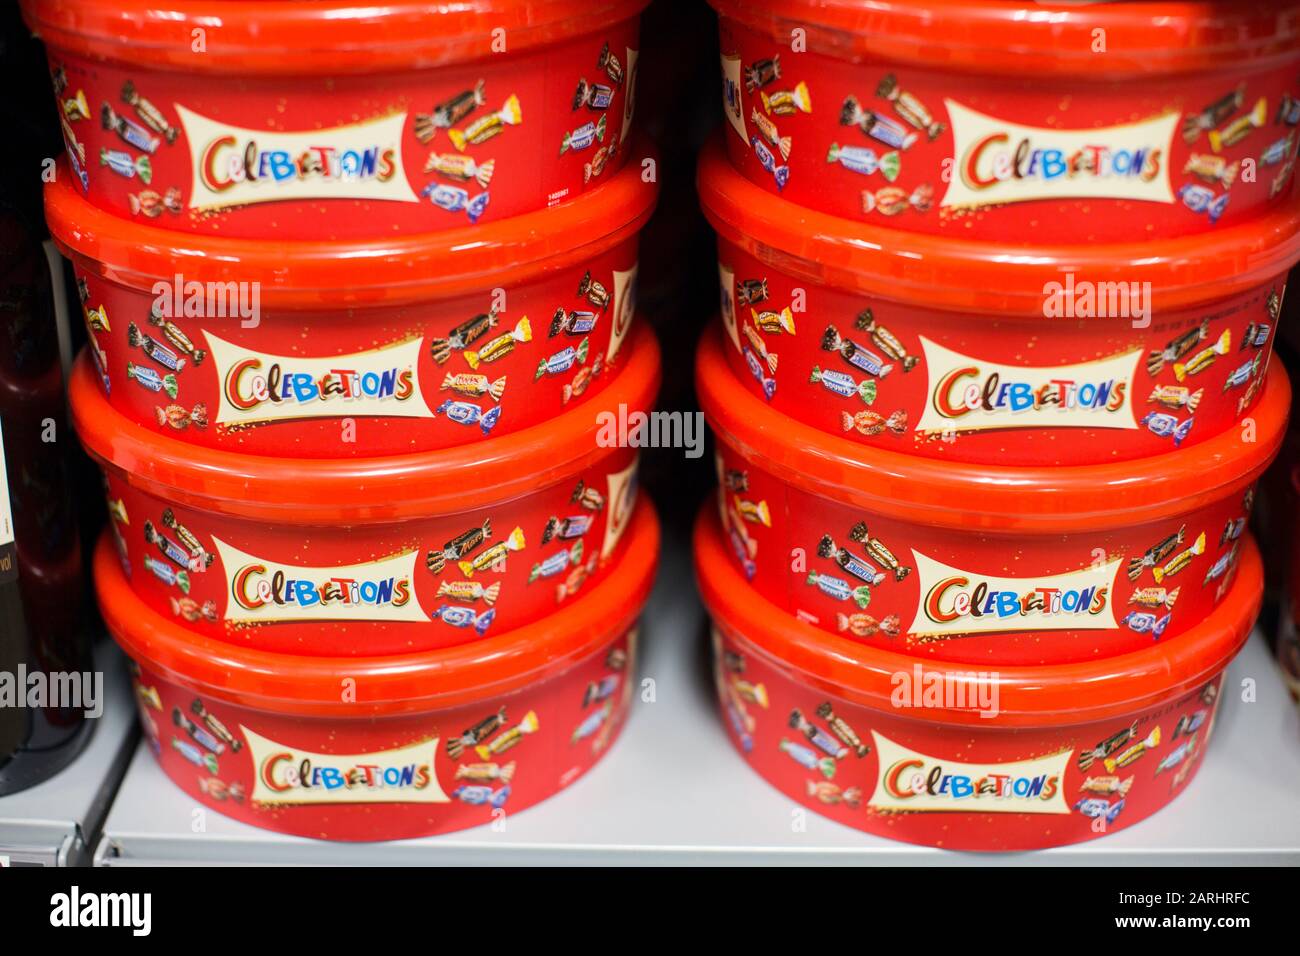 Vasche di cioccolatini di celebrazioni in un supermercato Foto Stock